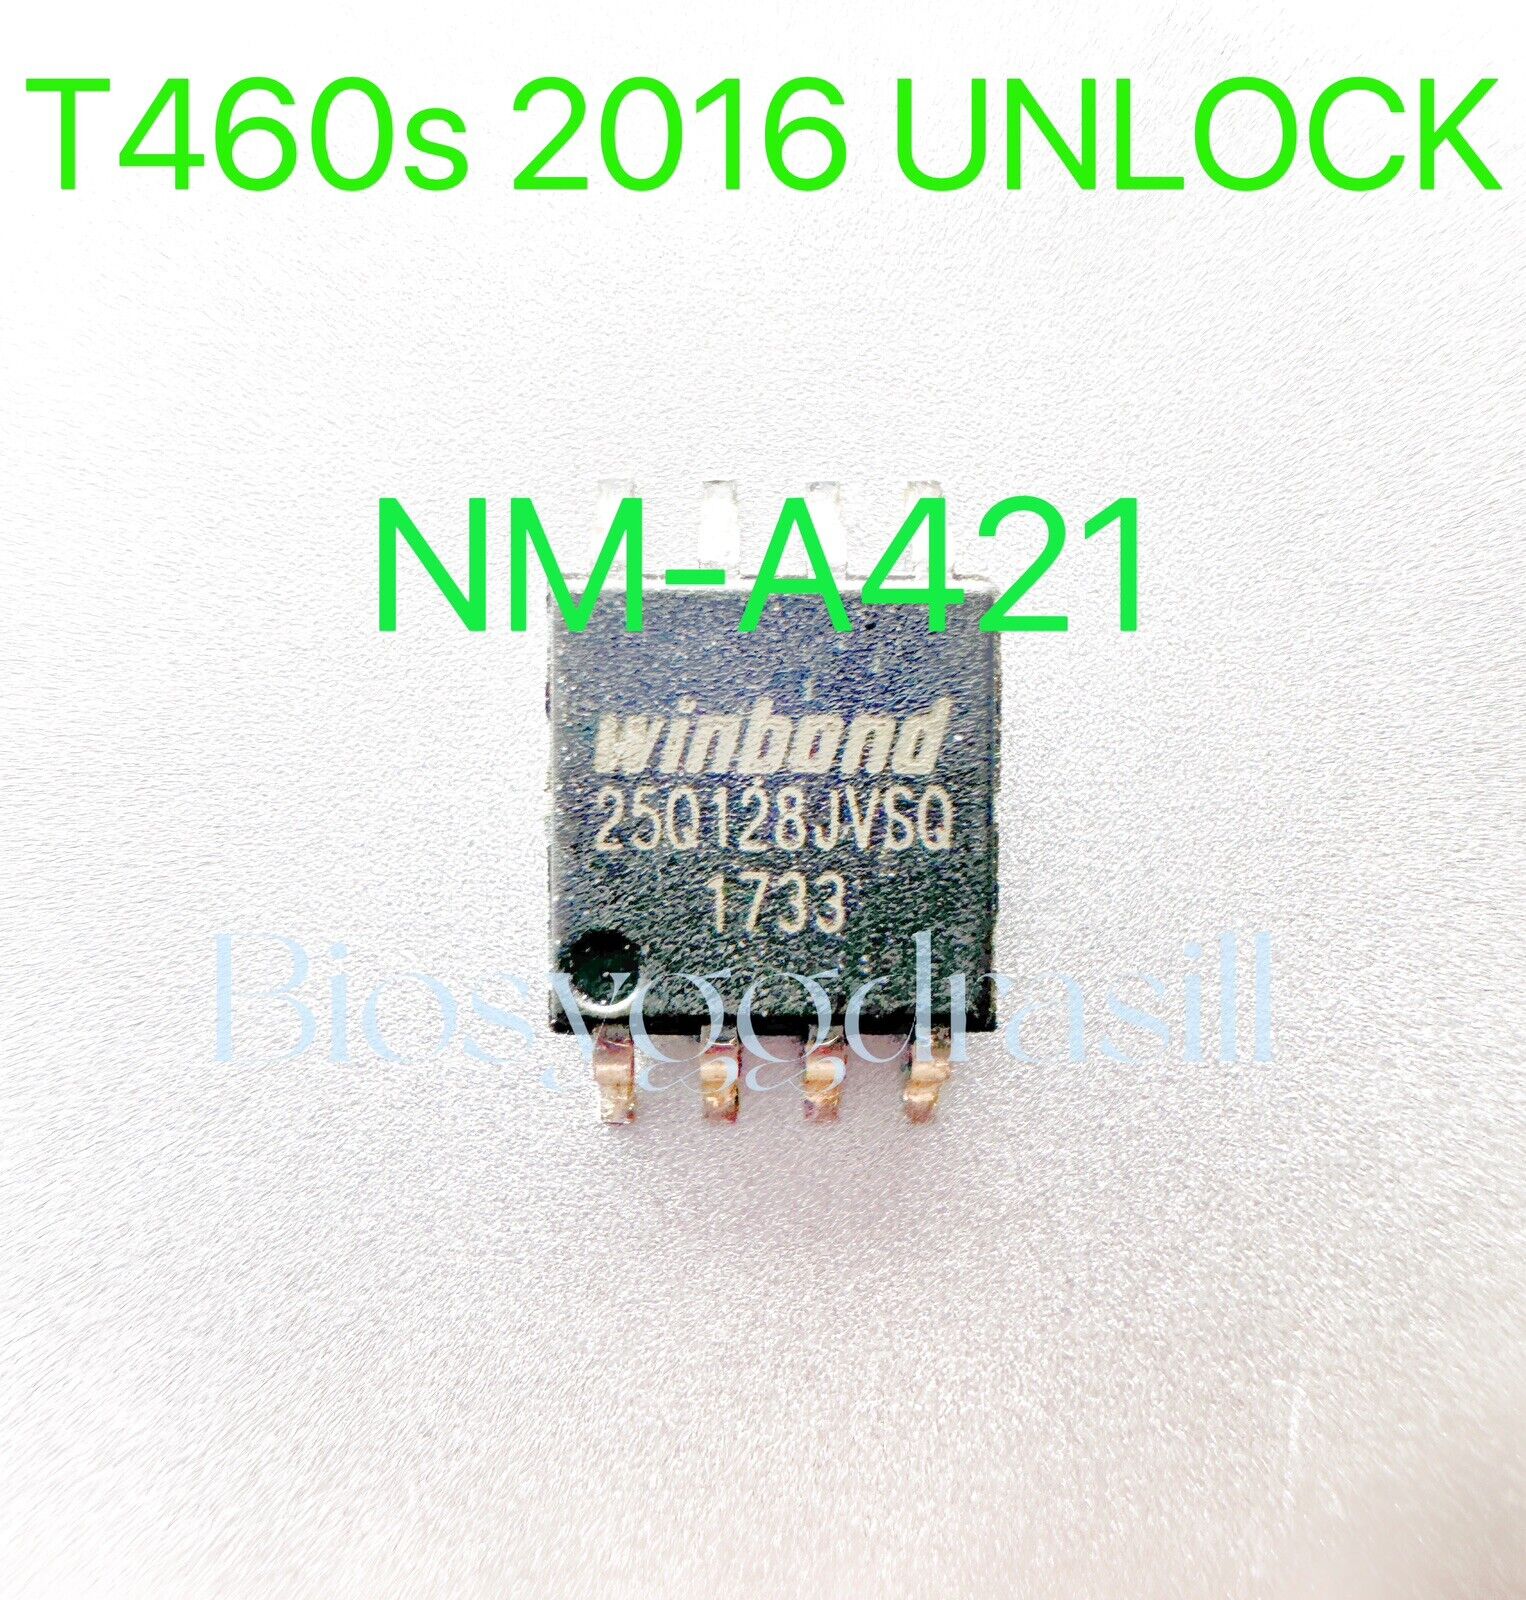 BIOS CHIP LENOVO TINKPAD T460s 2016 BT460 NM-A421 W25Q128FVSG(16MB) 8pins UNLOCK